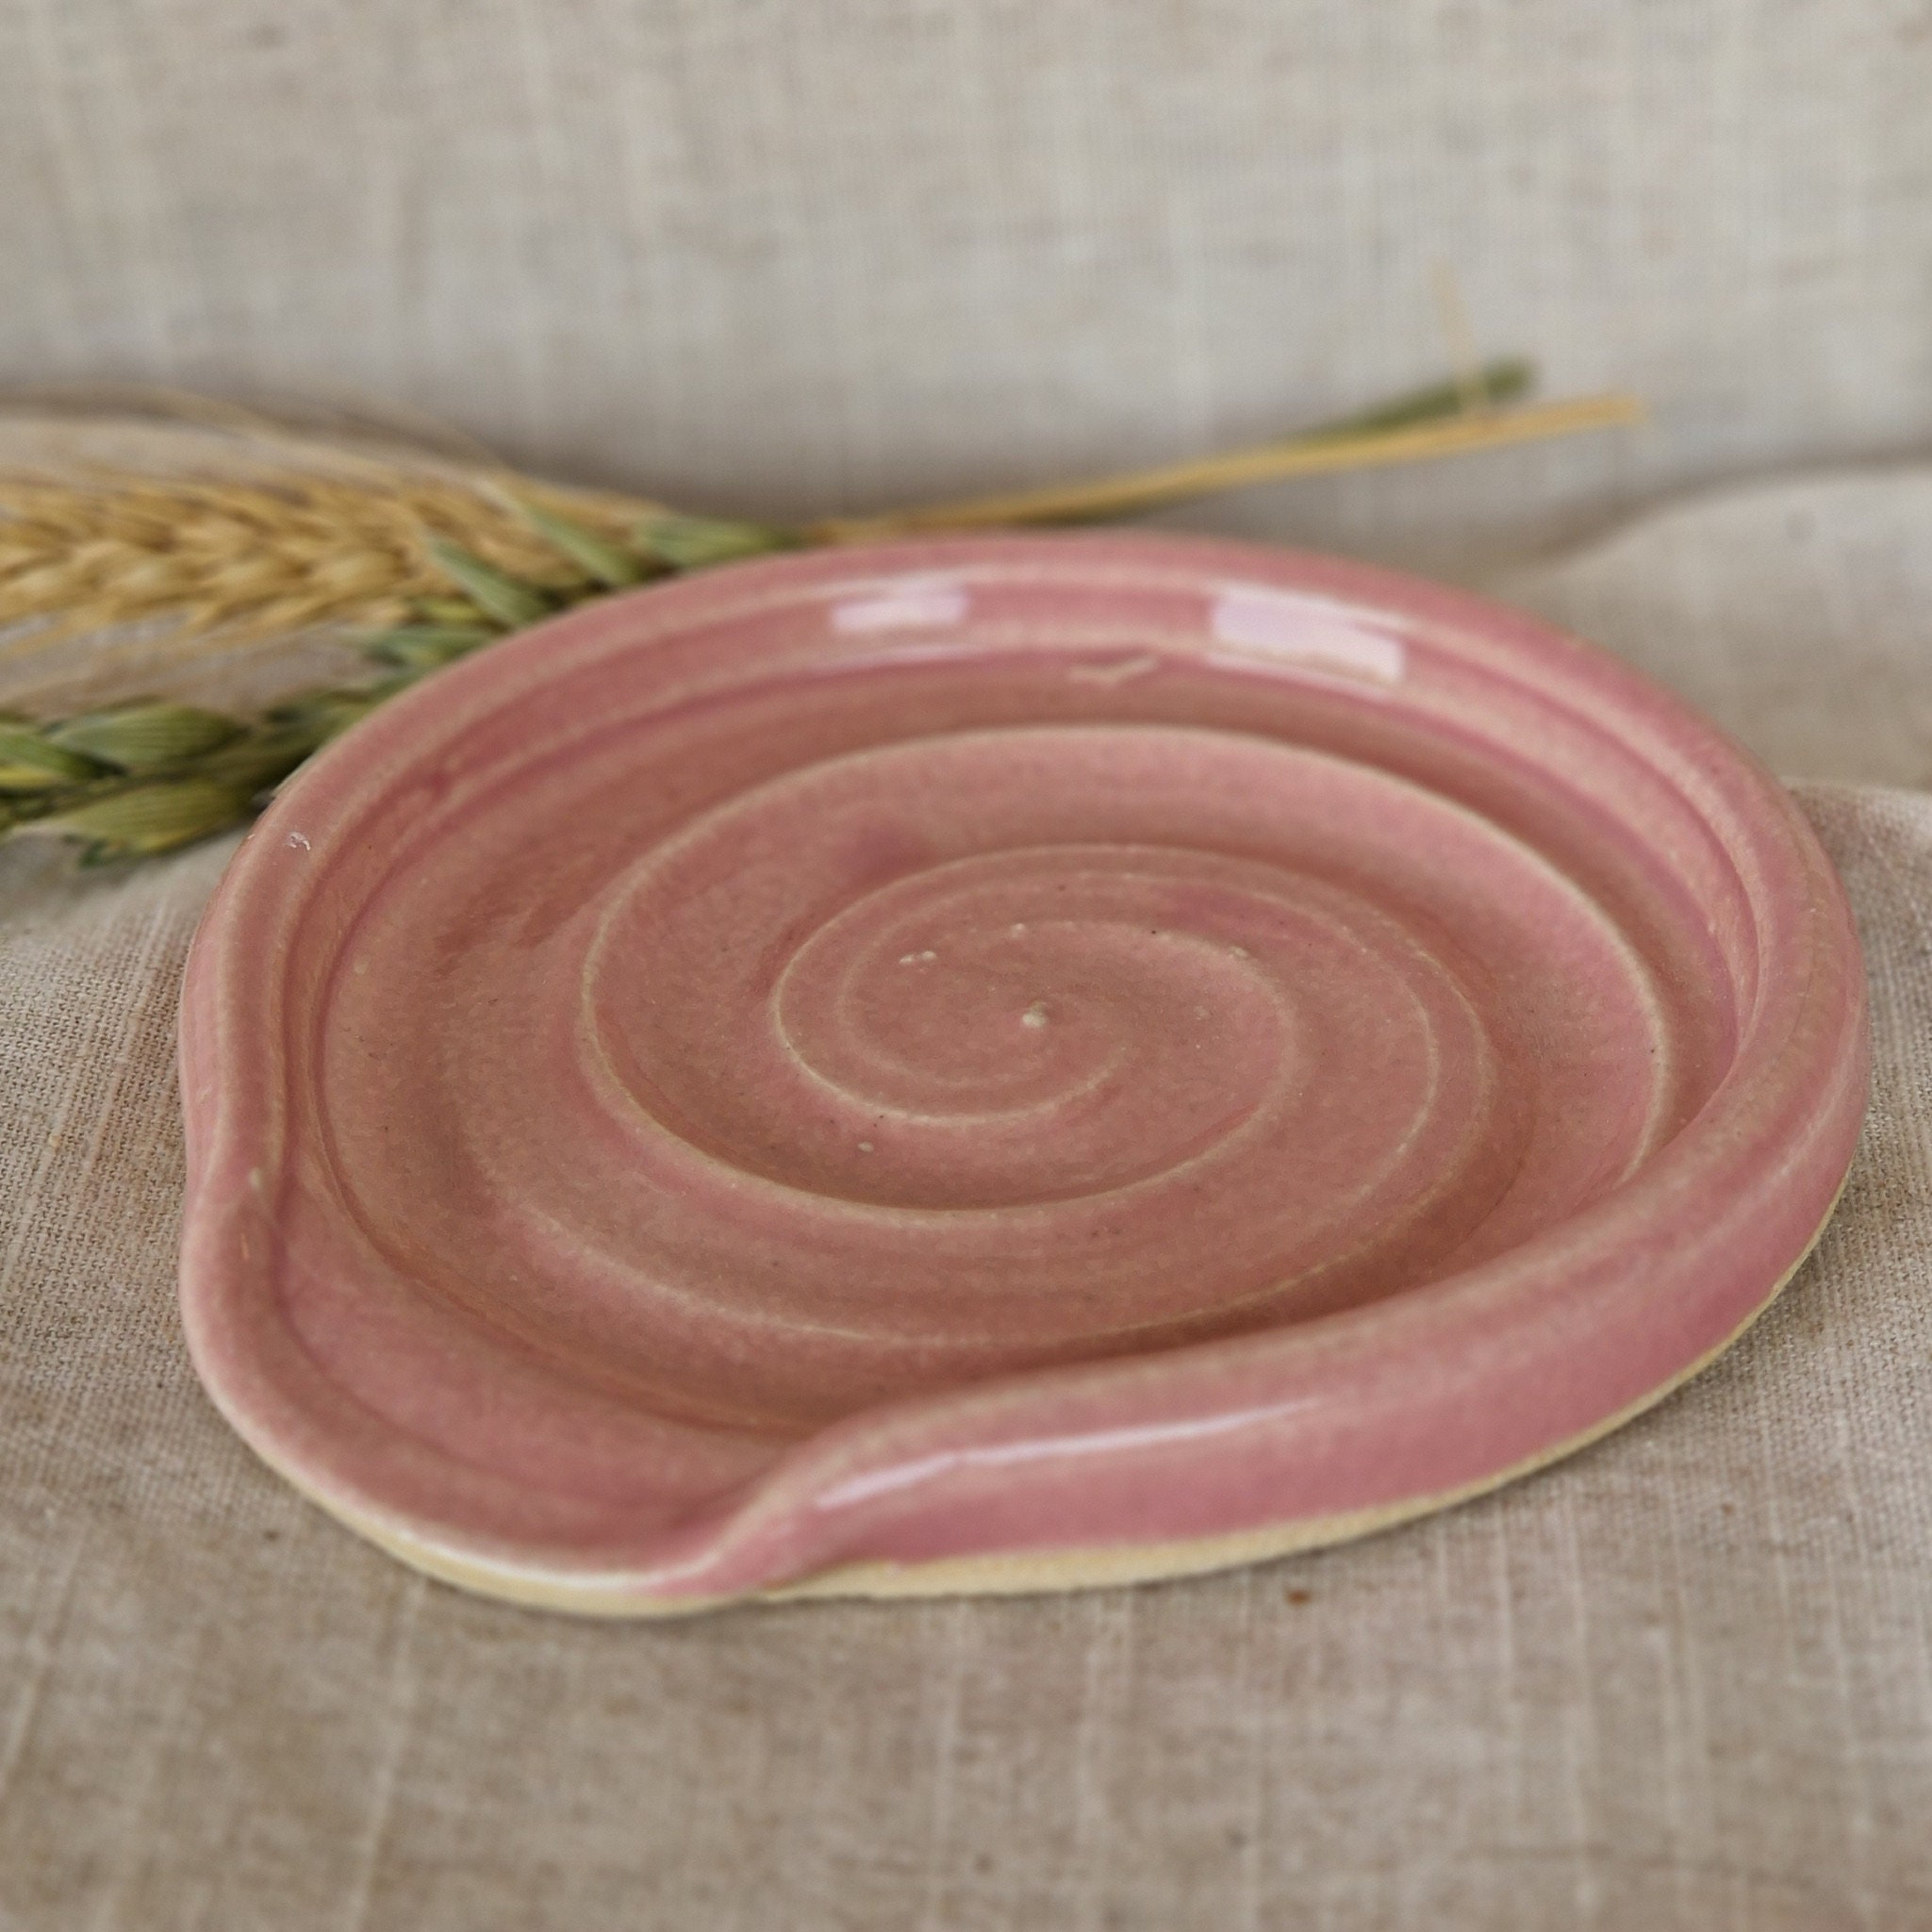 Piatti in ceramica rosa Candy Floss, piatto da pranzo fatto a mano